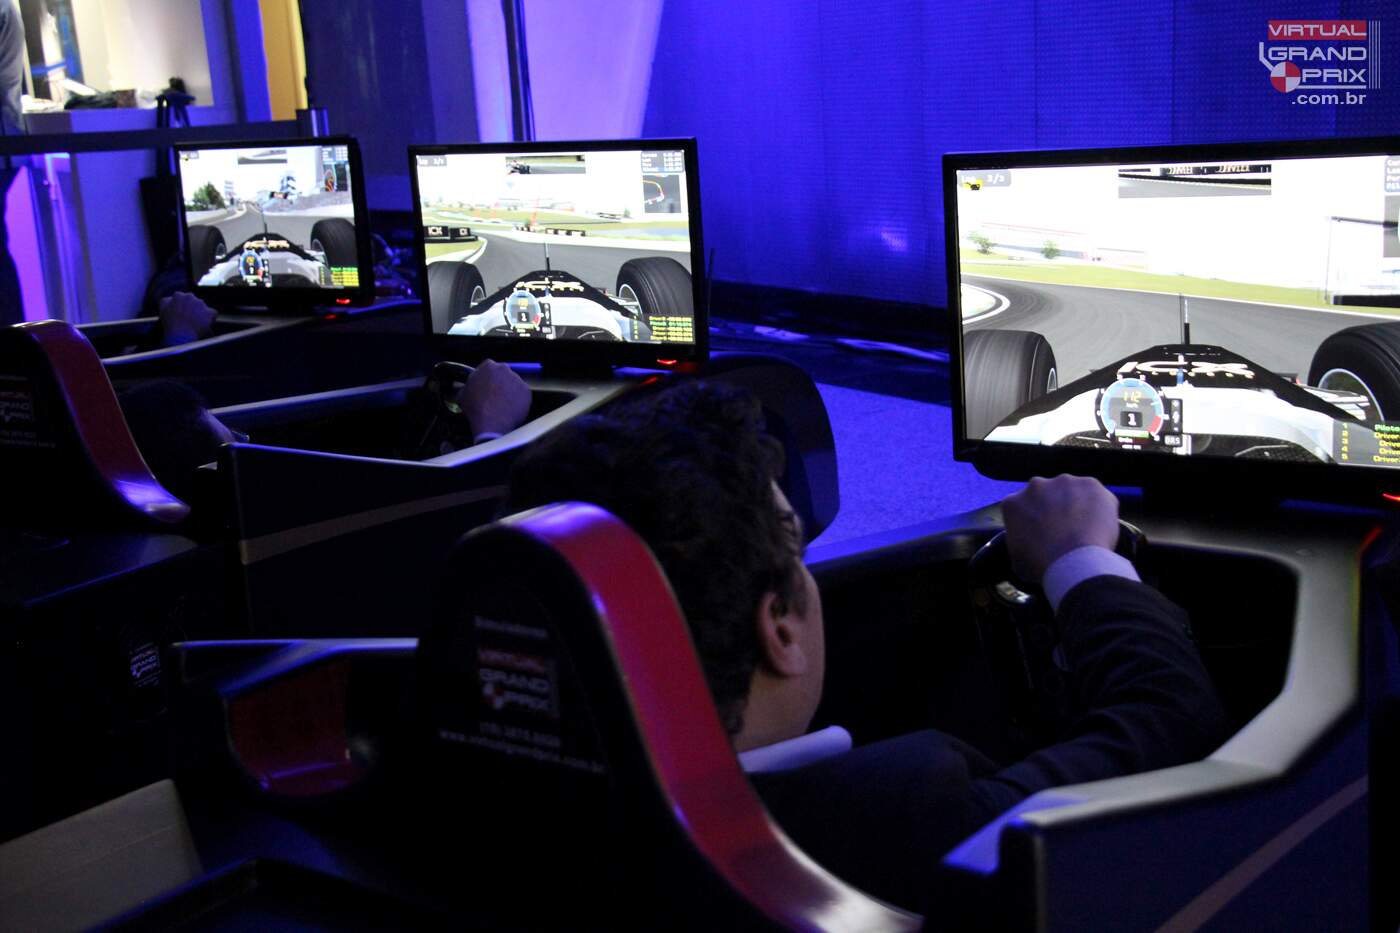 Simuladores Formula 1 ICX Soluções | EMC Fórum 2015